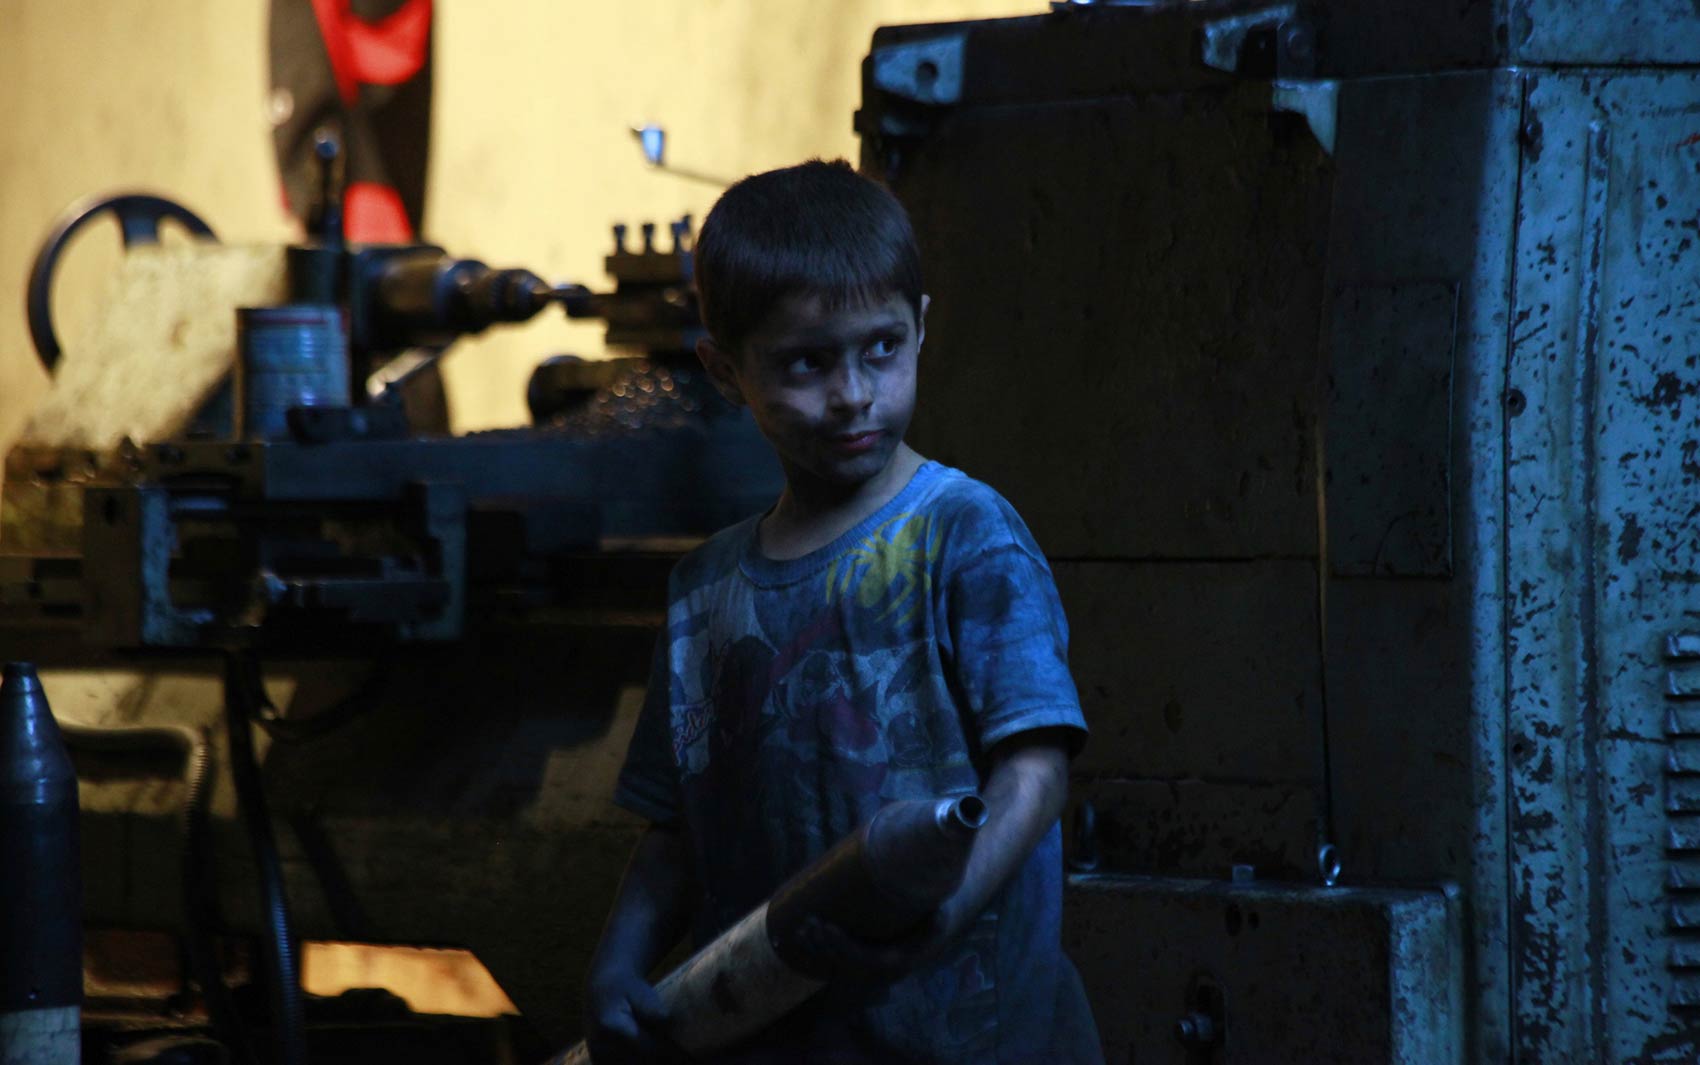 Em uma fábrica que fornece armamentos apra o Exército Livre da Síria em Aleppo, um jovem funcionário chama atenção preparando bombas e morteiros. Aos 10 anos, o jovem Issa ajuda seu pai na fábrica trabalhando 10 horas por dia, folgando apenas às sextas.